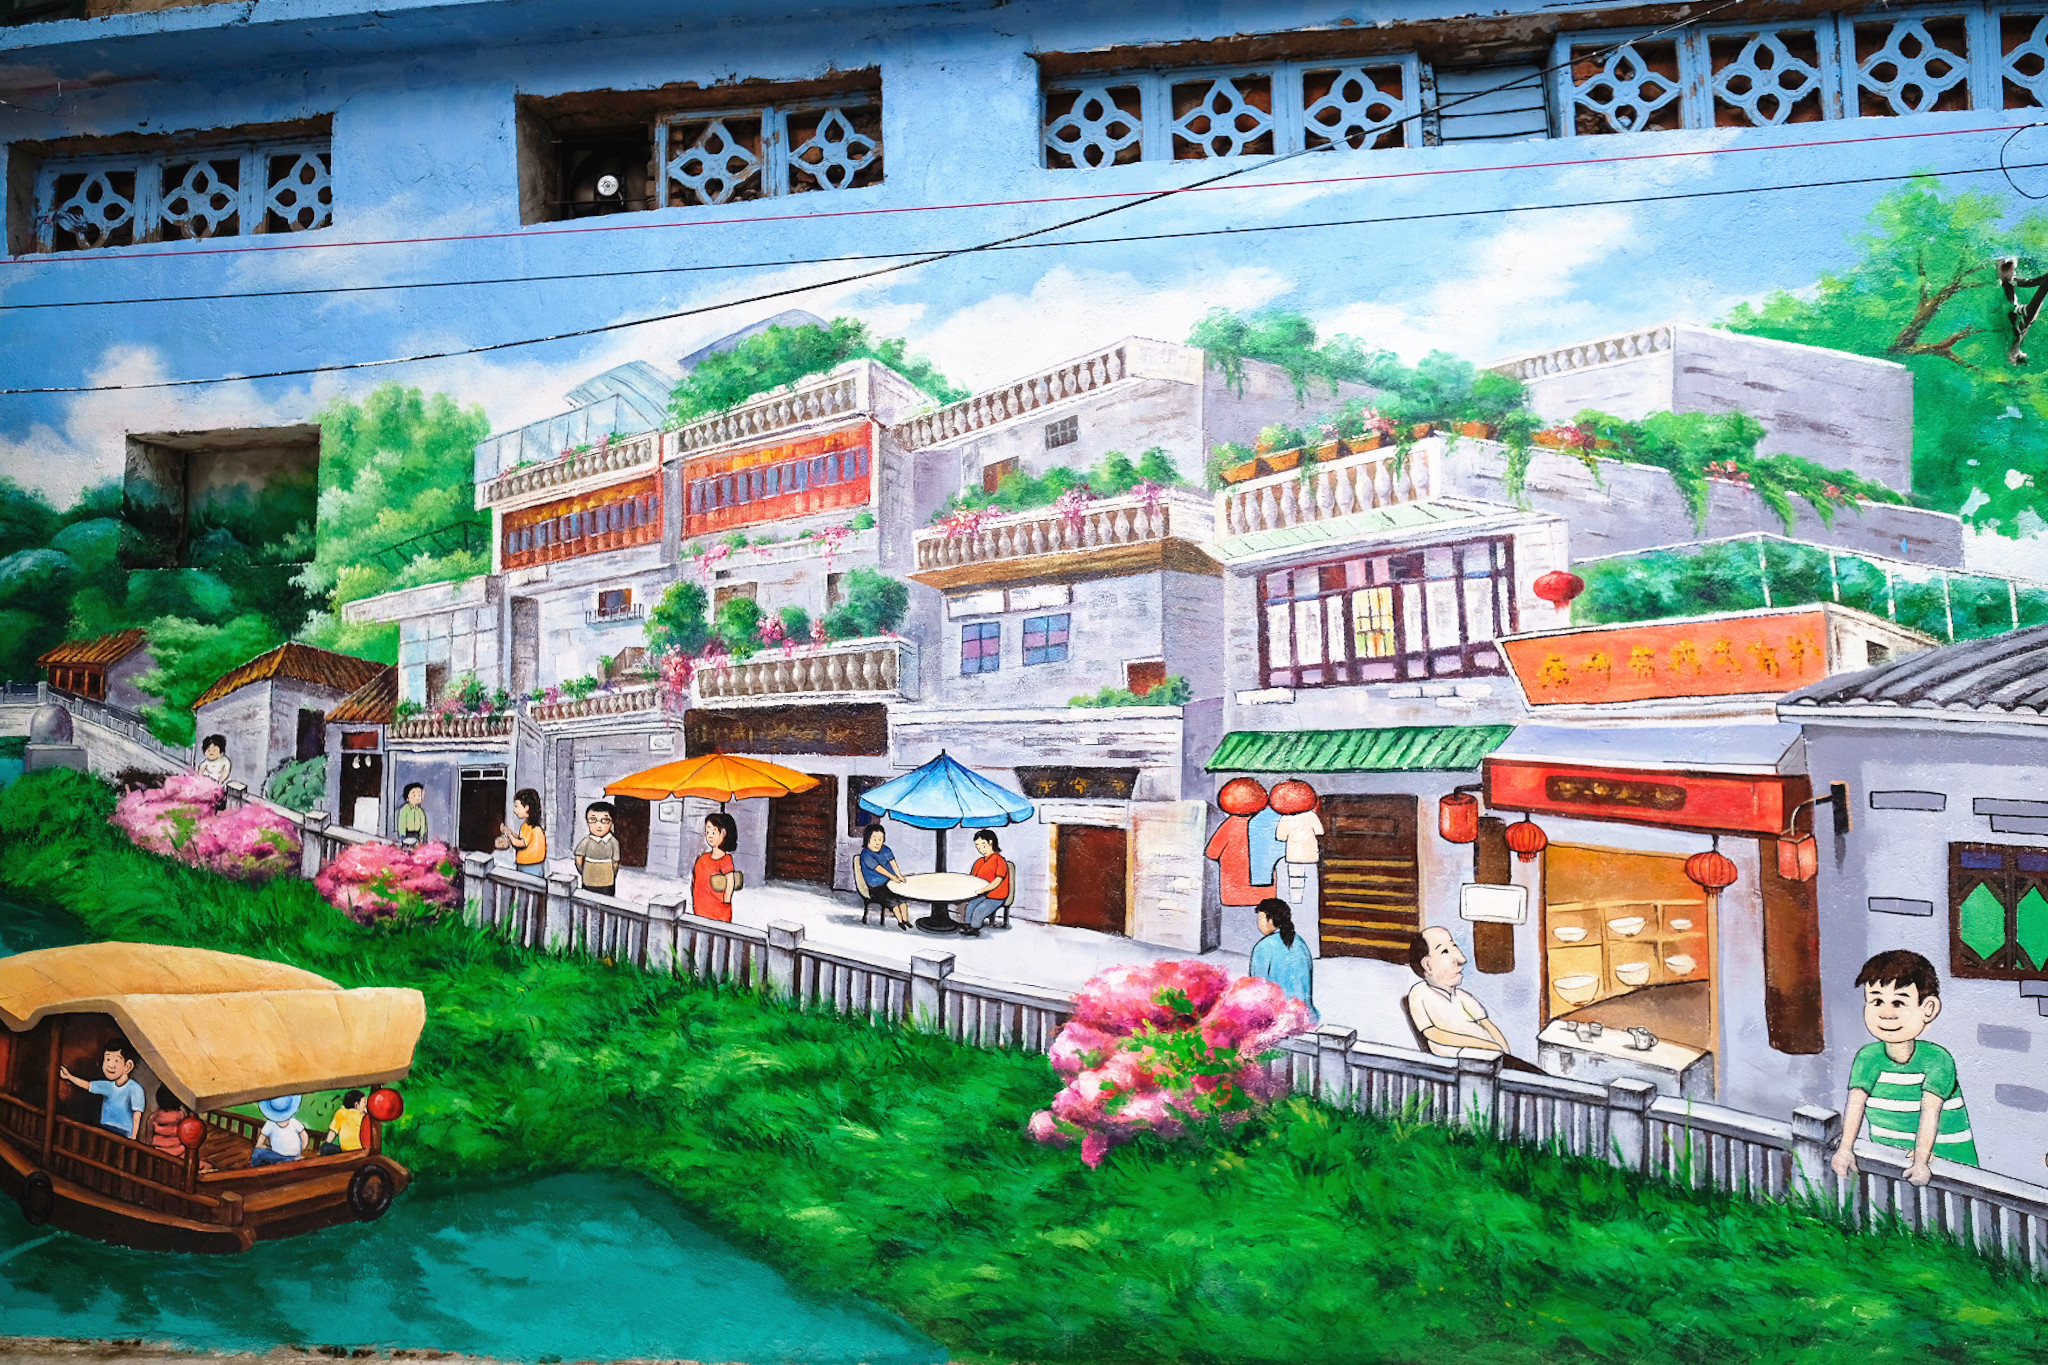 岭南特色彩绘涂鸦为街区增添了一抹亮色.